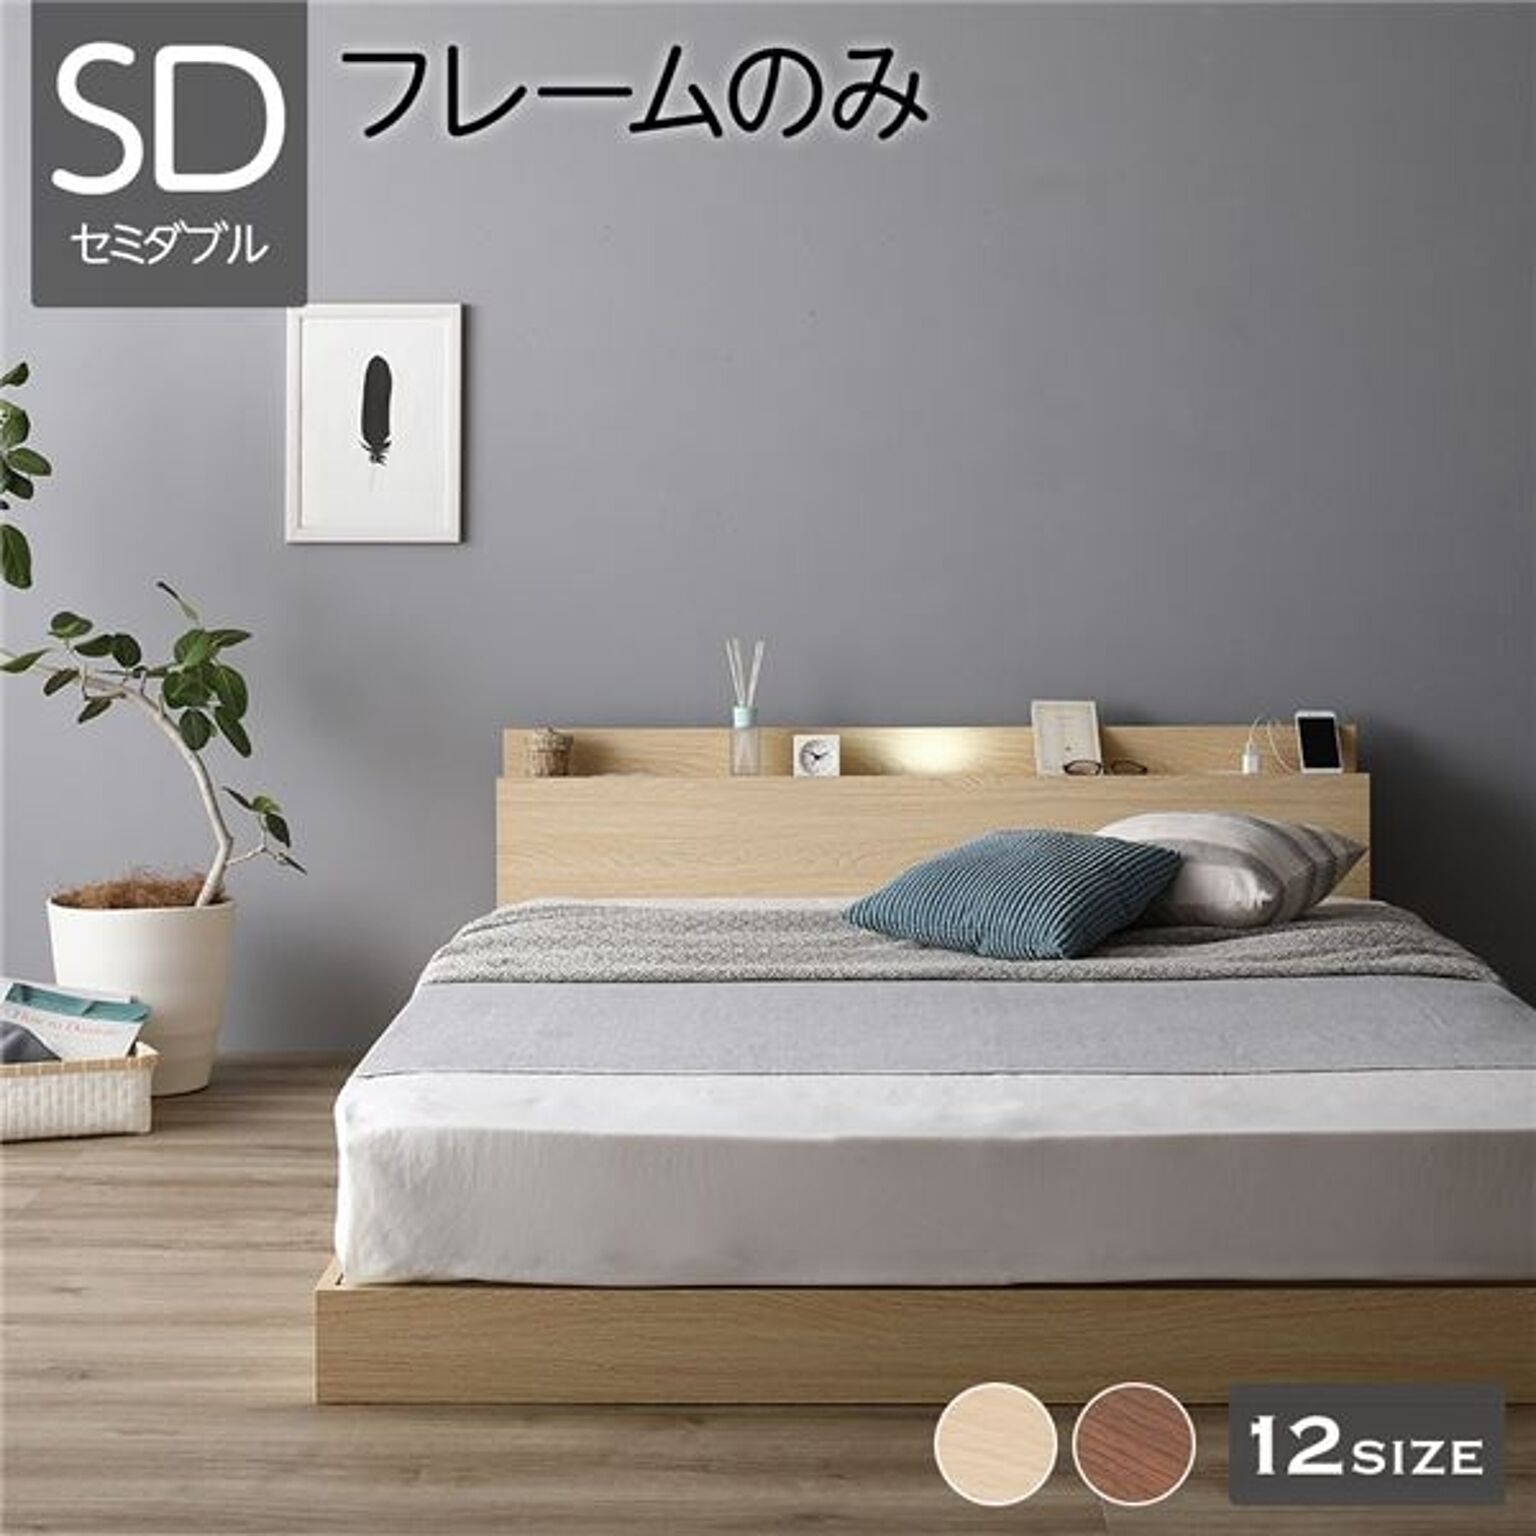 ベッド 低床 連結 ロータイプ すのこ 木製 LED照明付き 棚付き 宮付き コンセント付き シンプル モダン ナチュラル セミダブル ベッドフレームのみ